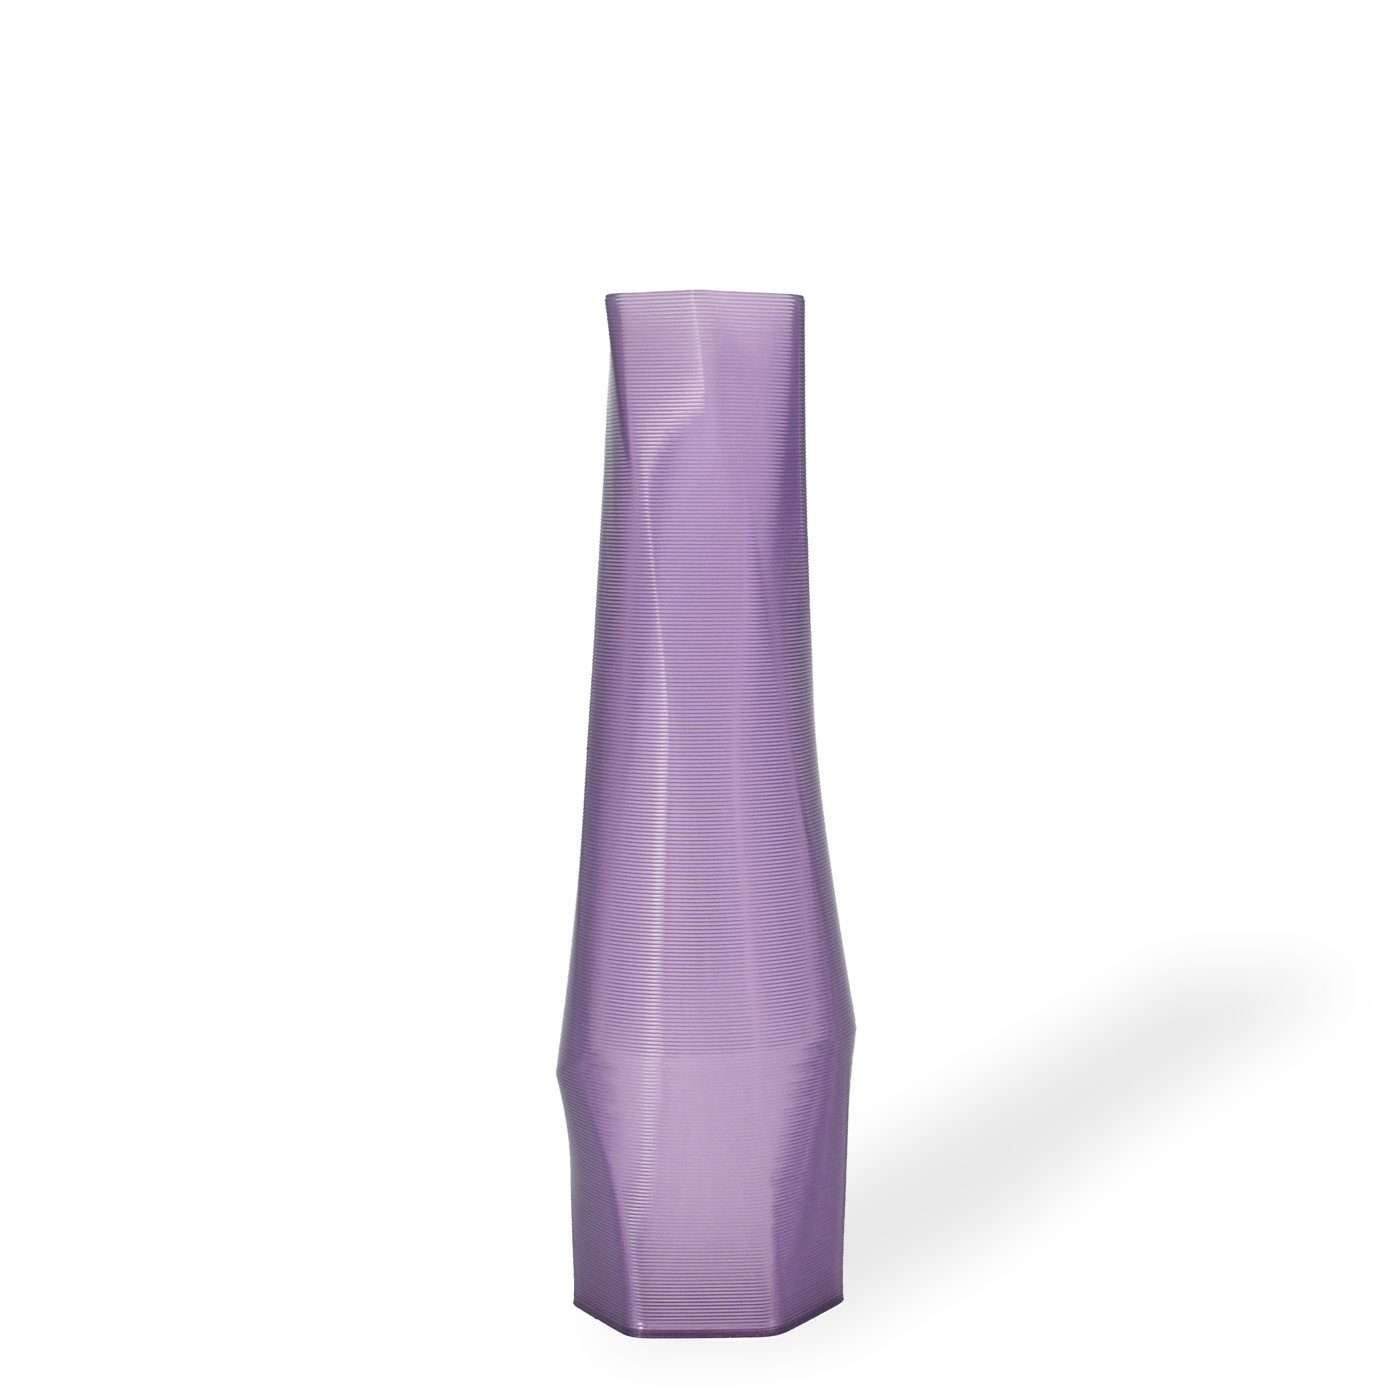 Shapes - Decorations Dekovase the vase - hexagon (deco), 3D Vasen, viele Farben, 100% 3D-Druck (Einzelmodell, 1 Vase), Dekorative Vase aus durchsichtigem Kunststoff Lila